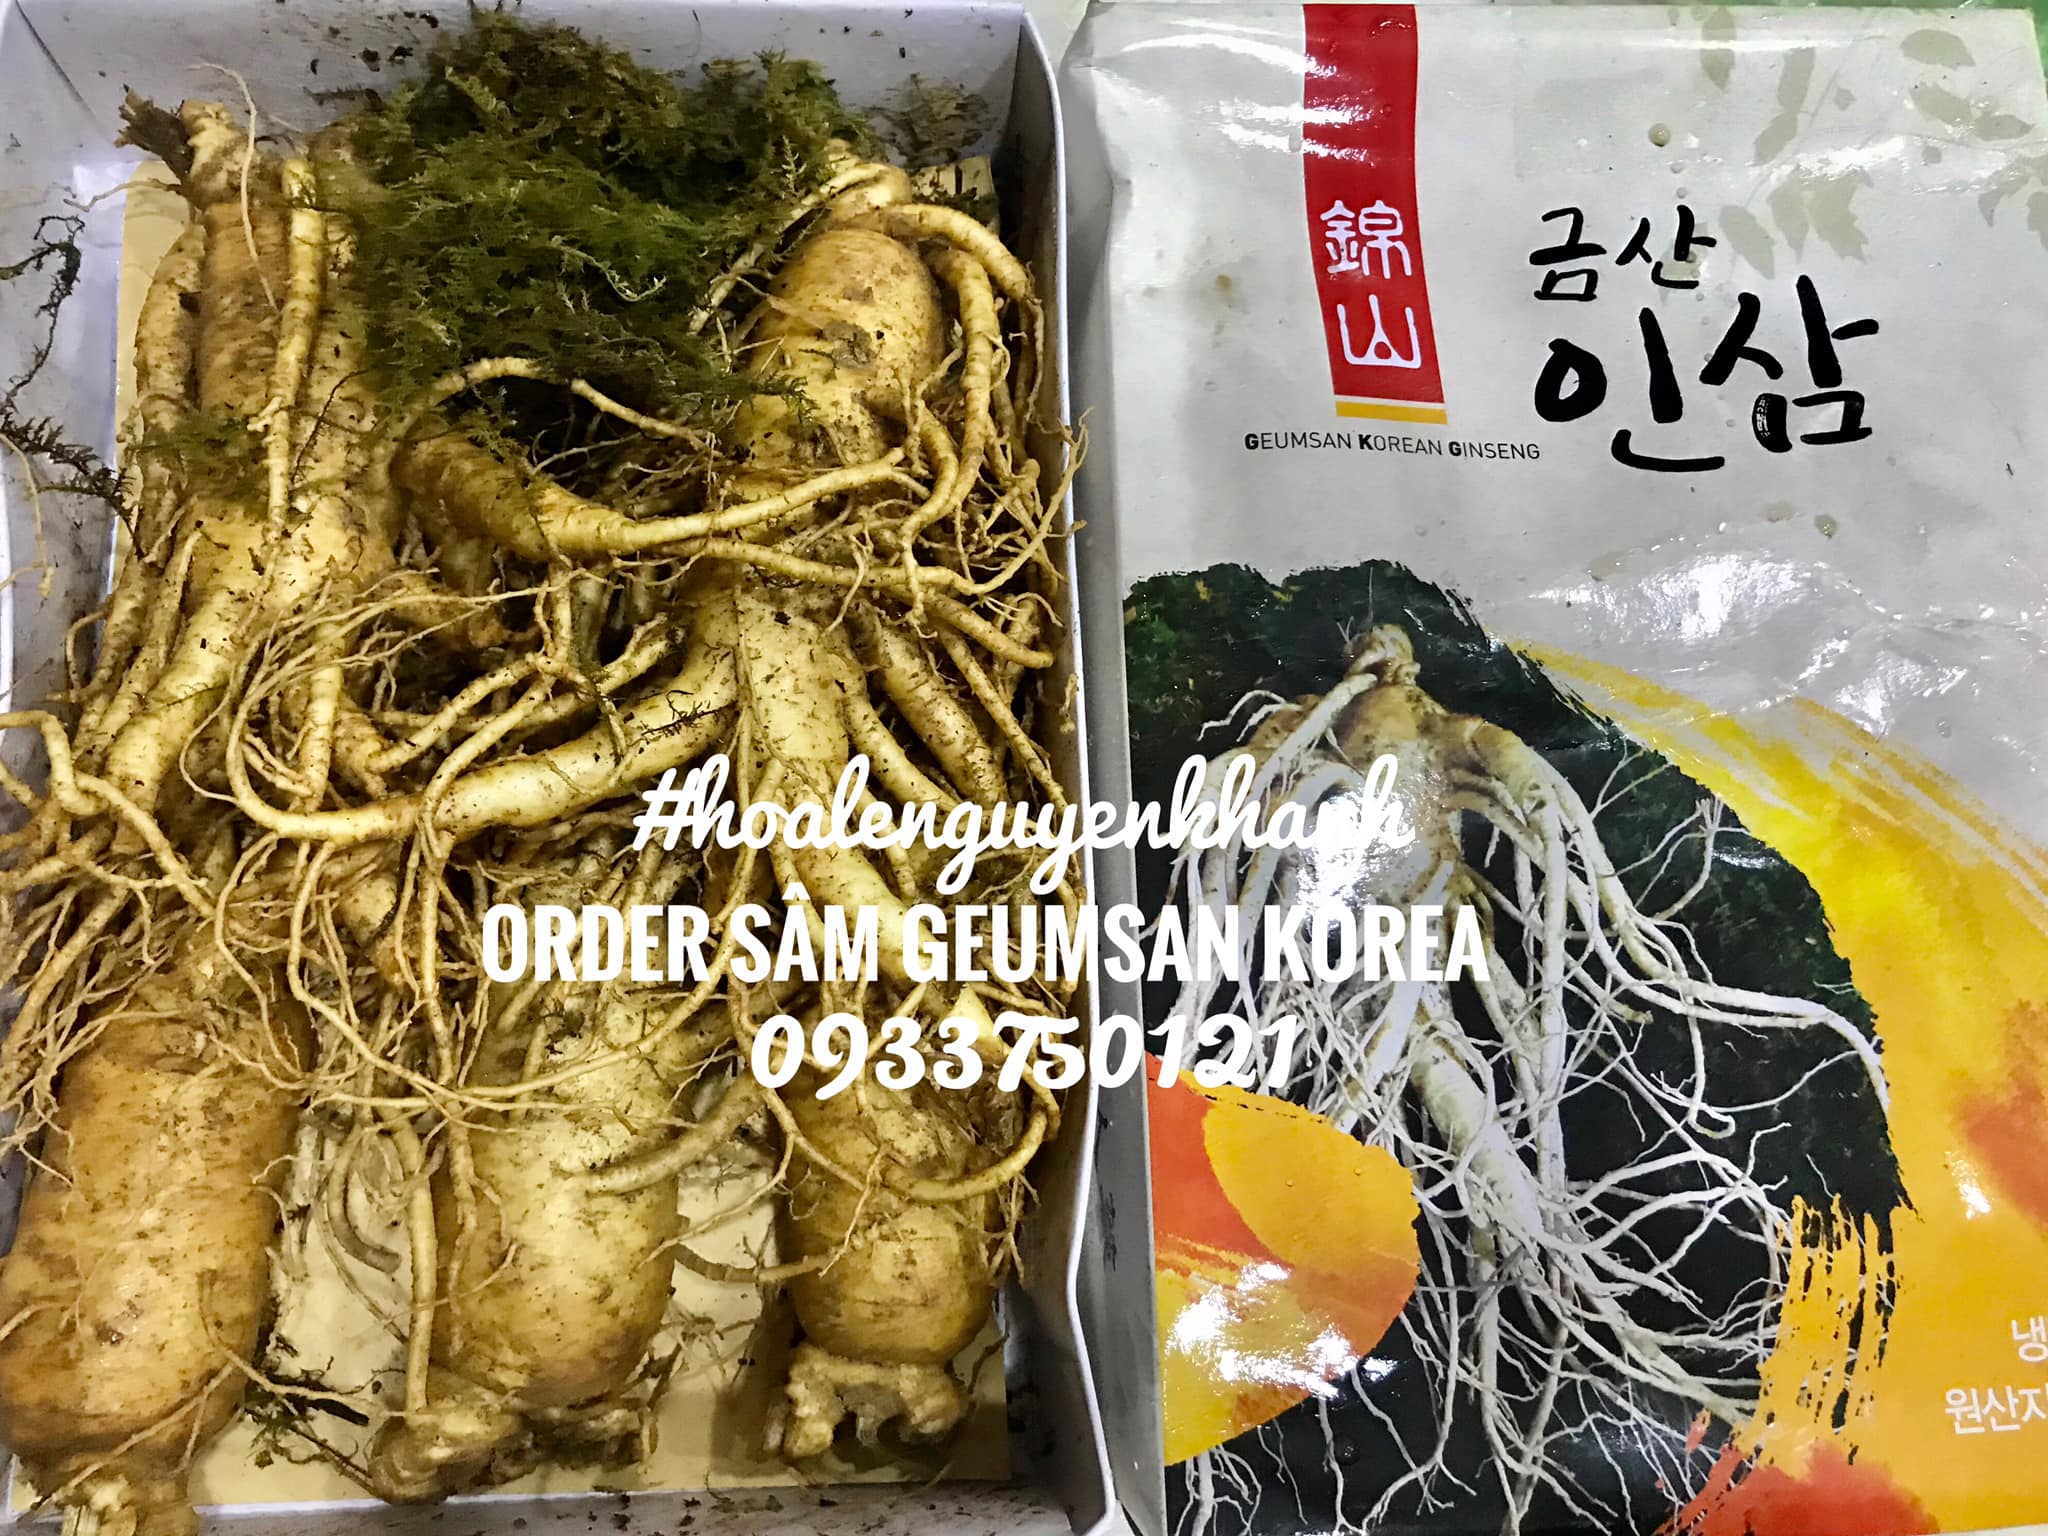 Order Sâm Geumsan Hàn Quốc